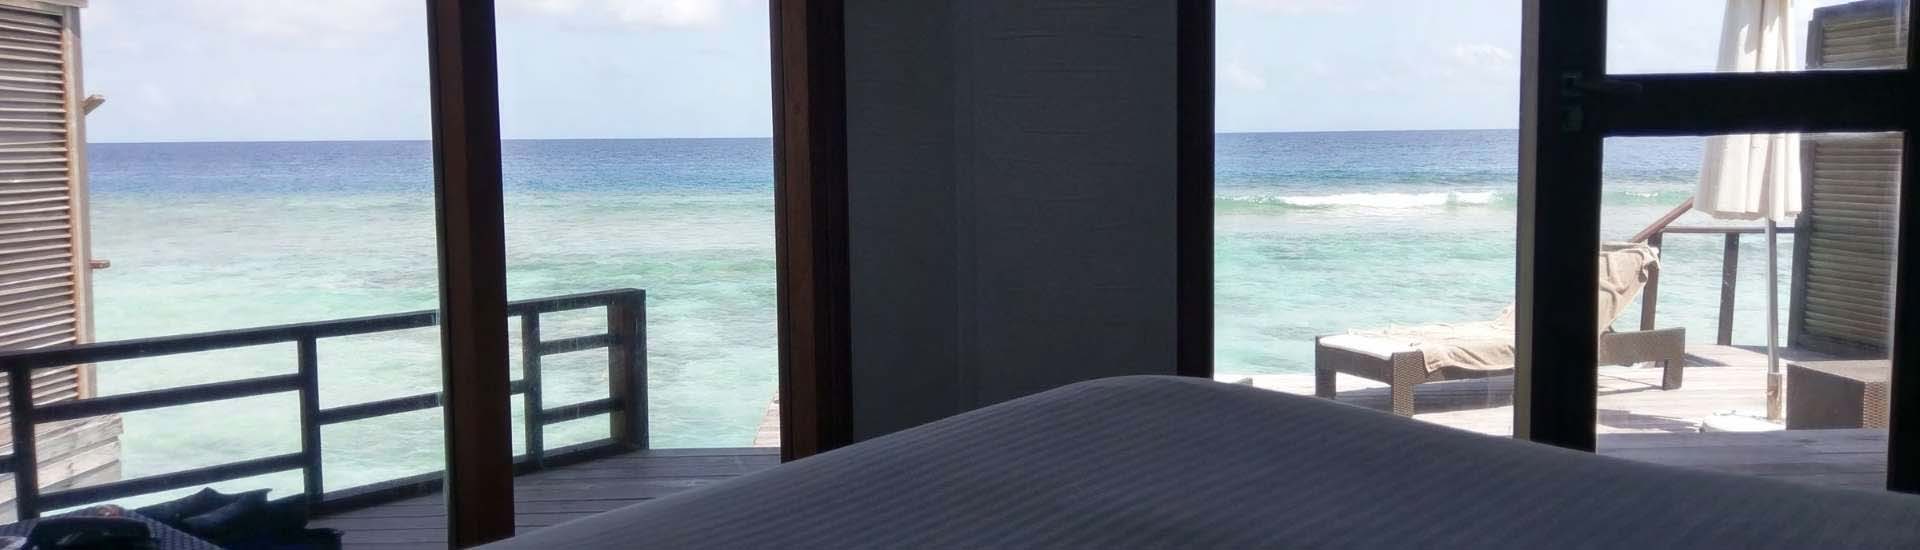 Uitzicht vanuit bed in de Malediven